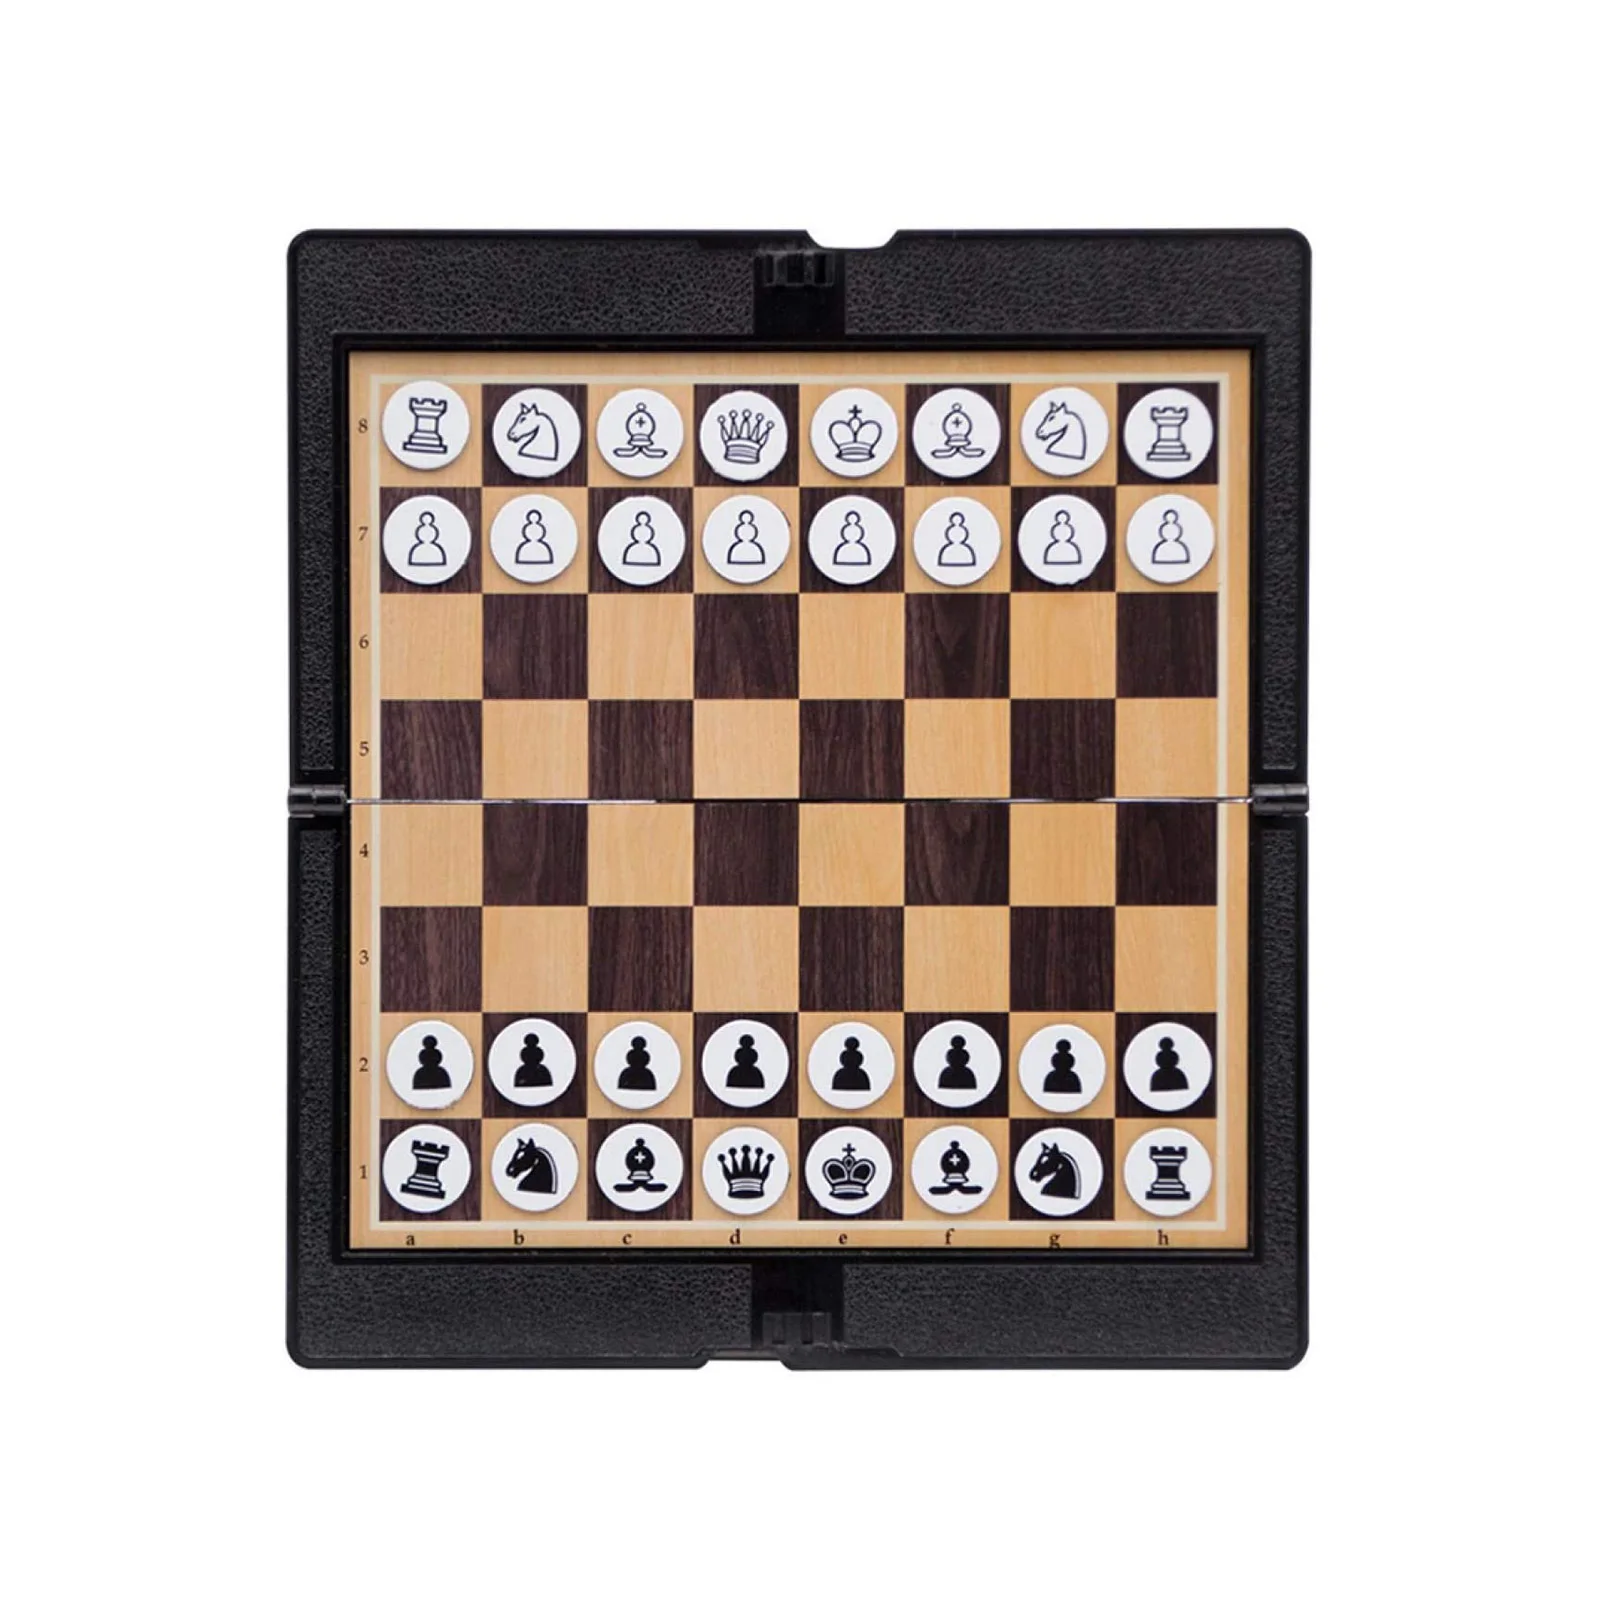 

Портативный складной кошелек для путешествий карманная шахматная доска для отдыха на природе путешествия Кемпинг Пикник развлечения игры ...